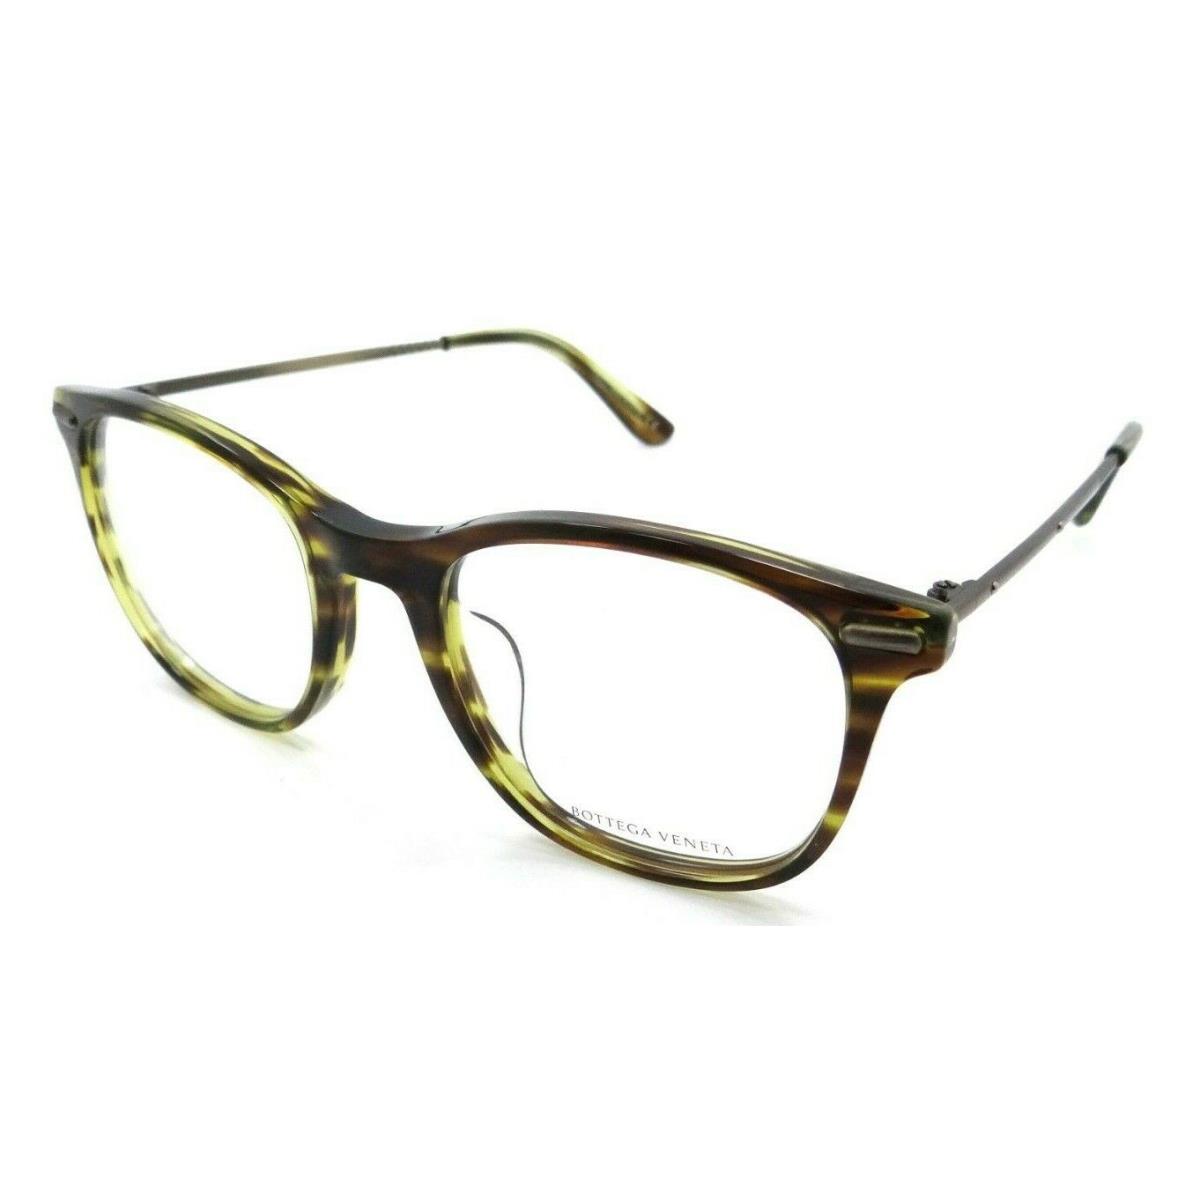 Bottega Veneta Eyeglasses Frames BV0033OA 003 52-21-140 Havana /bronze Asian Fit